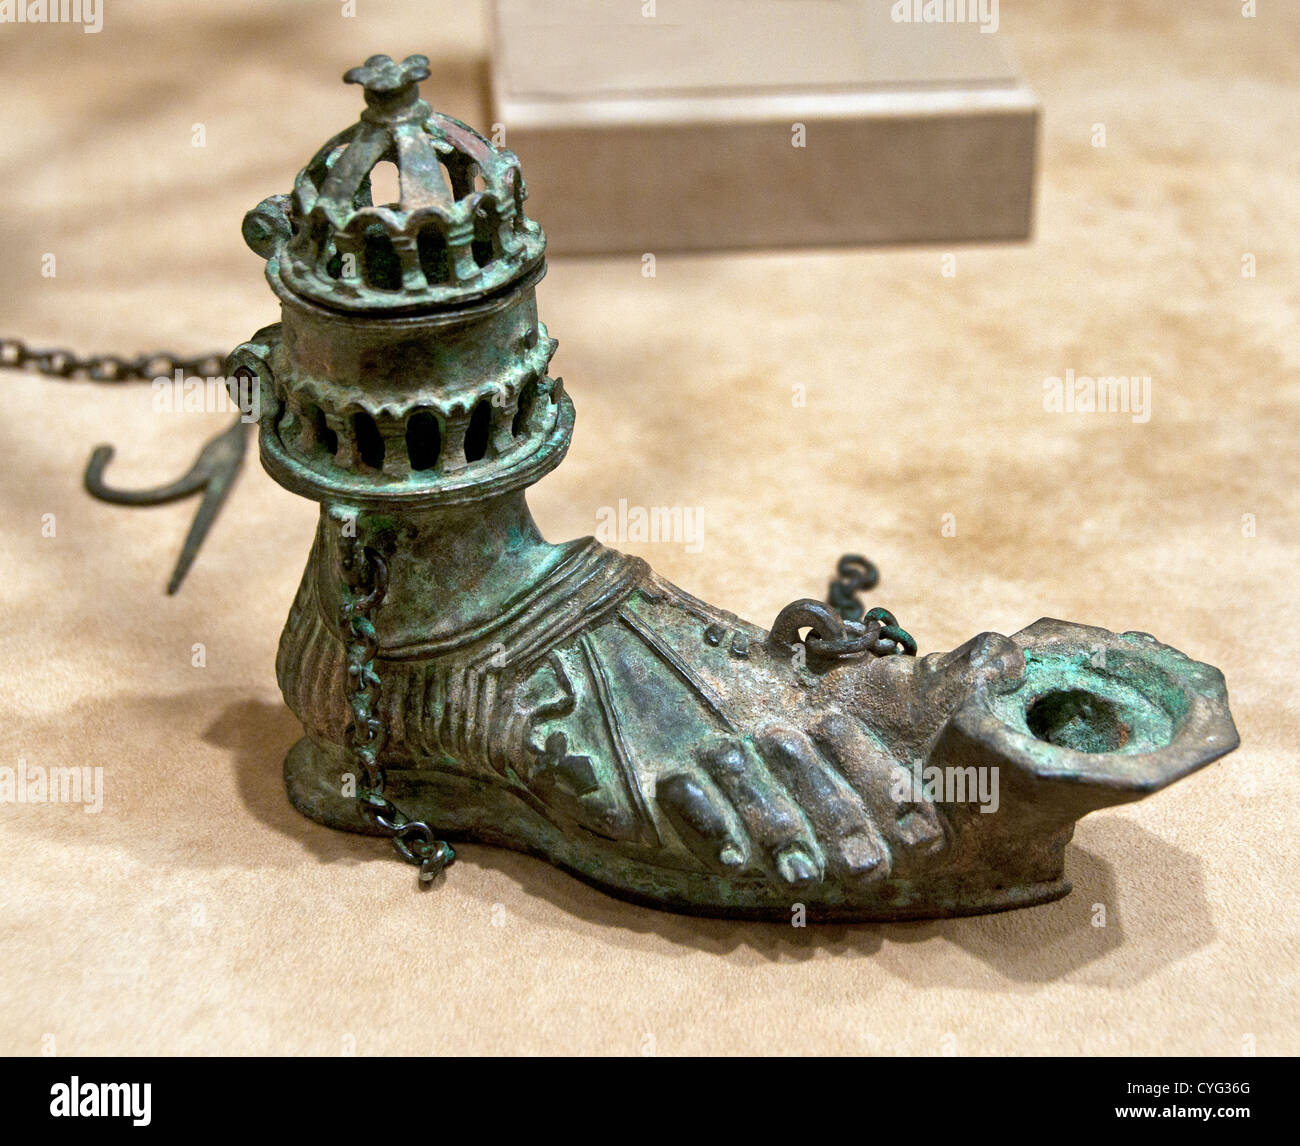 Zwei hängende Öllampe in Form von einer sandalentragende rechten Fuß 5. Jahrhundert Syrien byzantinische Byzanz Kupfer Legierung 16 cm Metallarbeiten Stockfoto